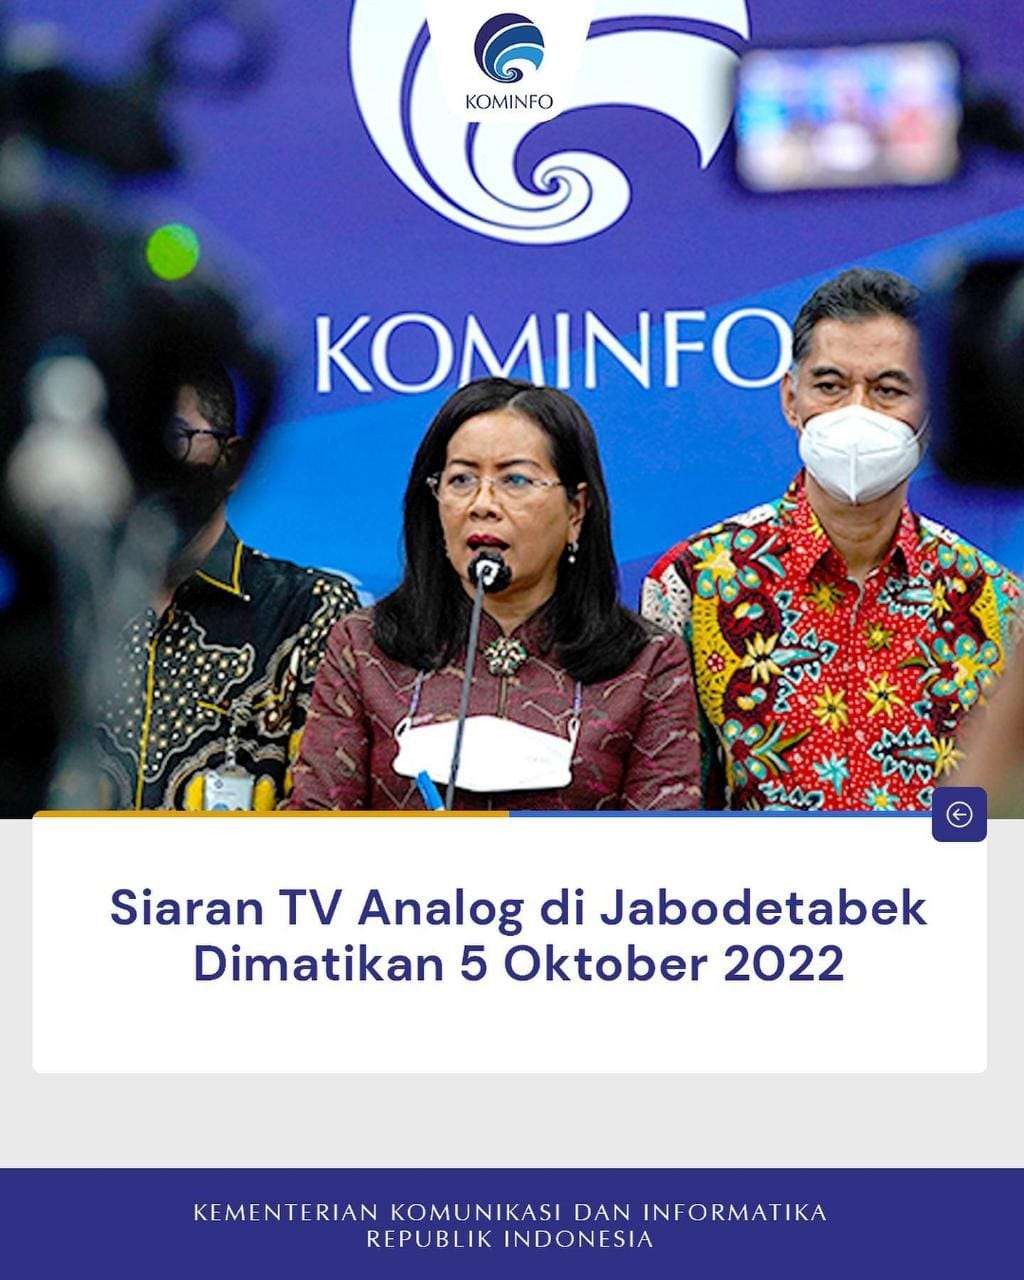 Kominfo Resmi Matikan Siaran TV Analog di Jabodetabek pada 5 Oktober.(Foto: Instagram)